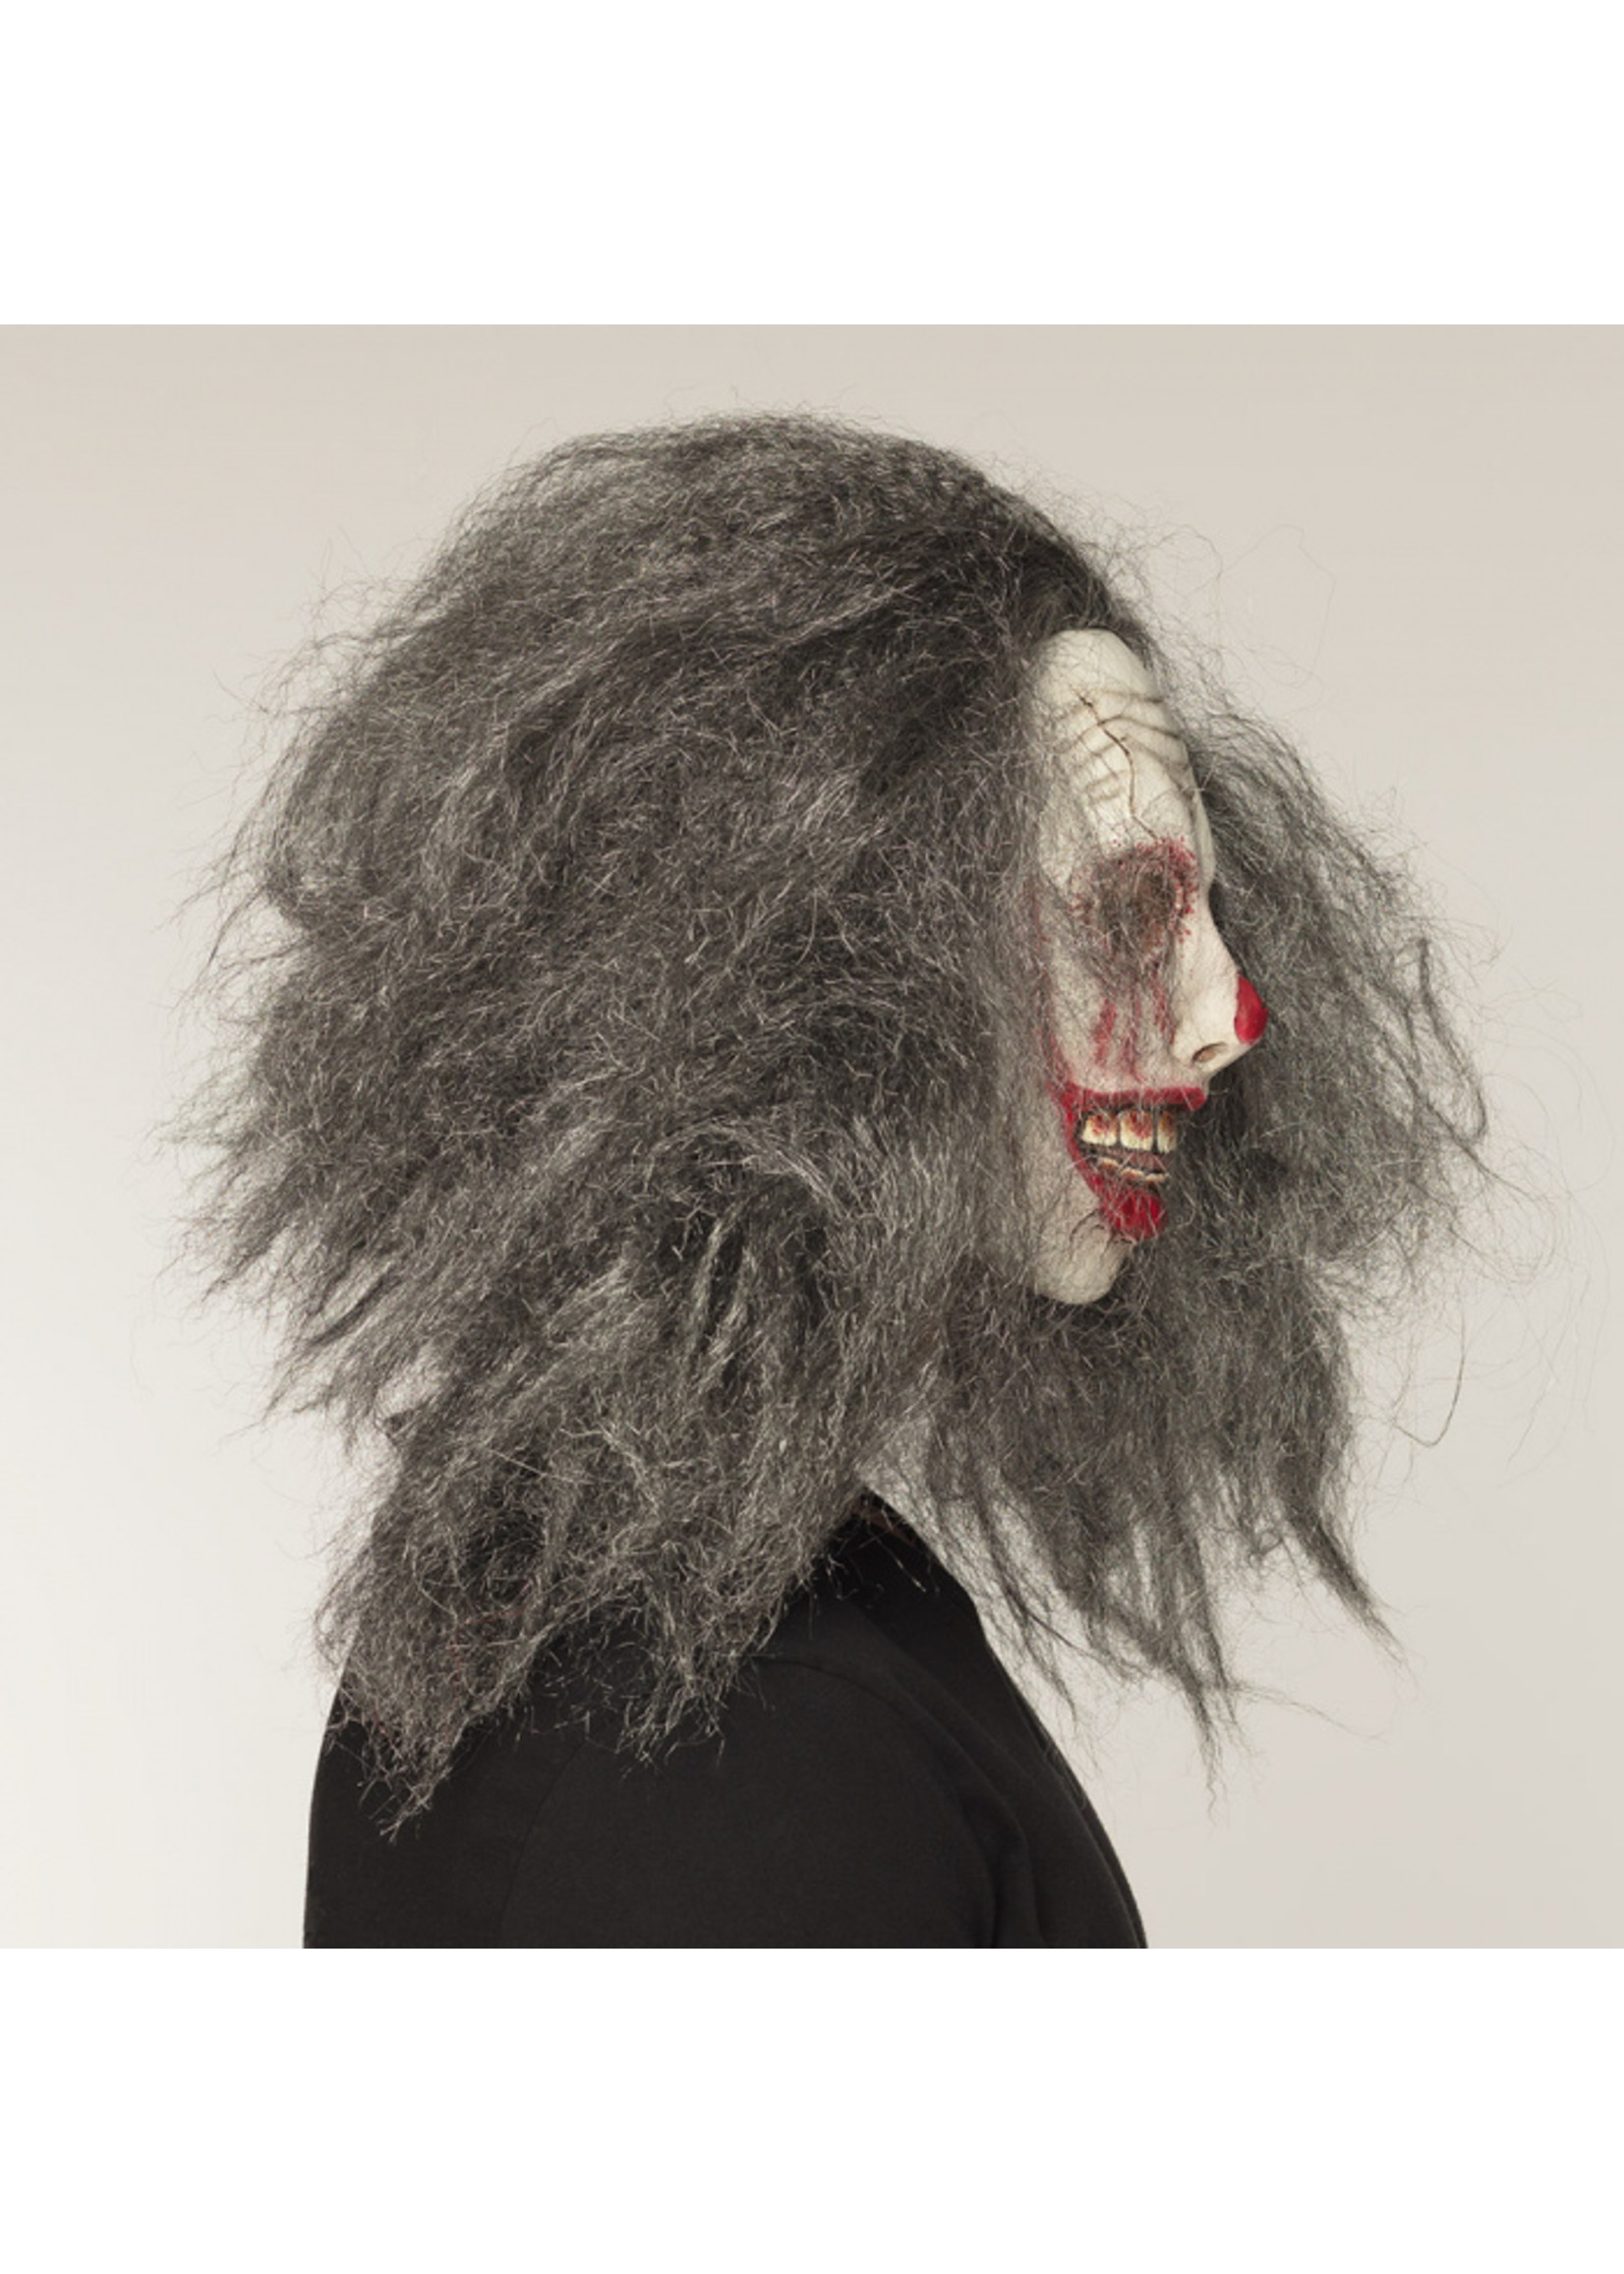 Feestkleding Breda Zombieclown latex 3 D masker